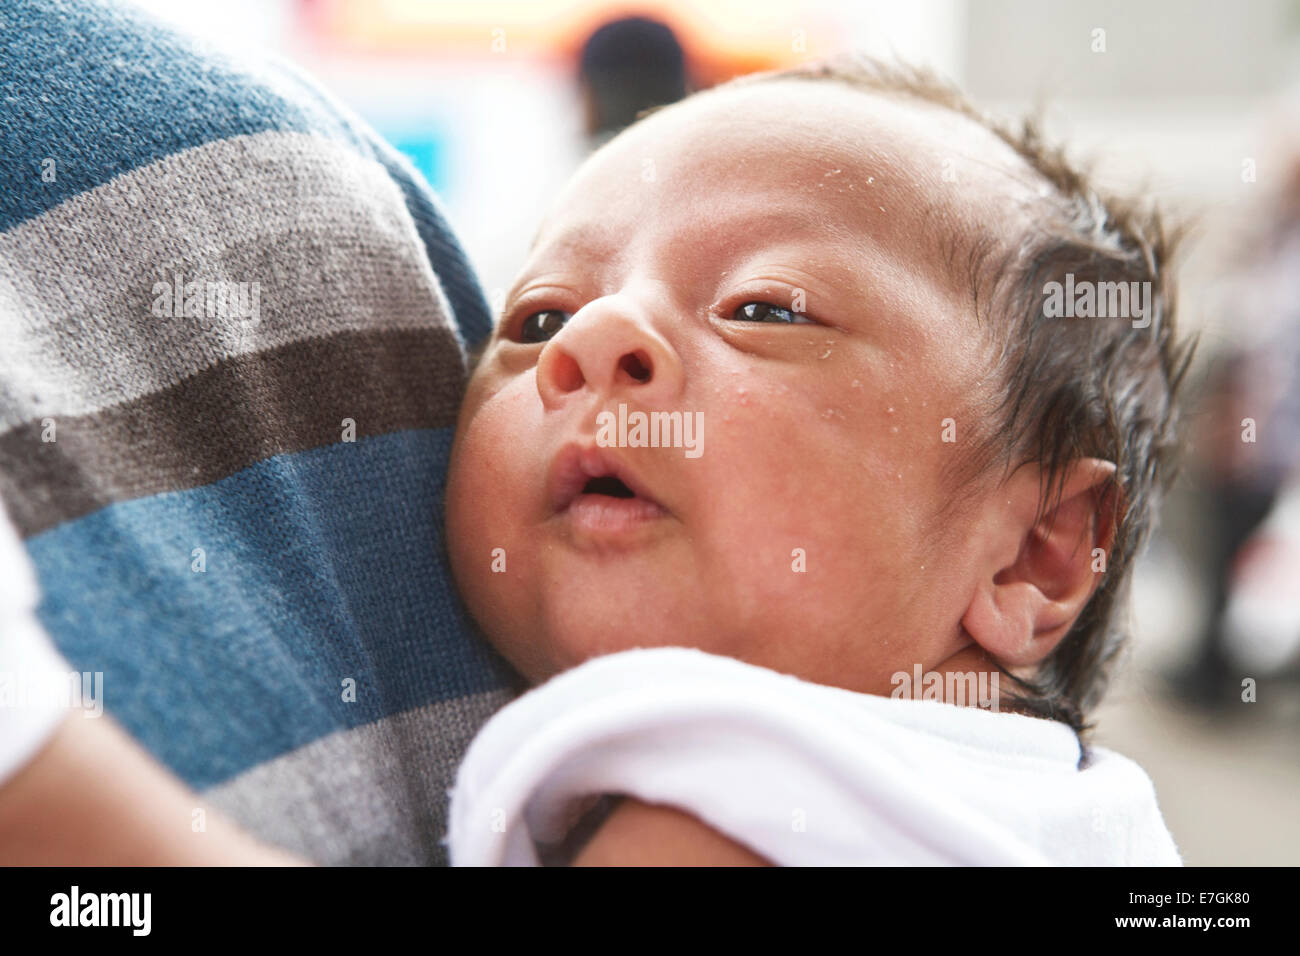 Jeune bébé reposant contre l'épaule de son père, Londres, UK Banque D'Images